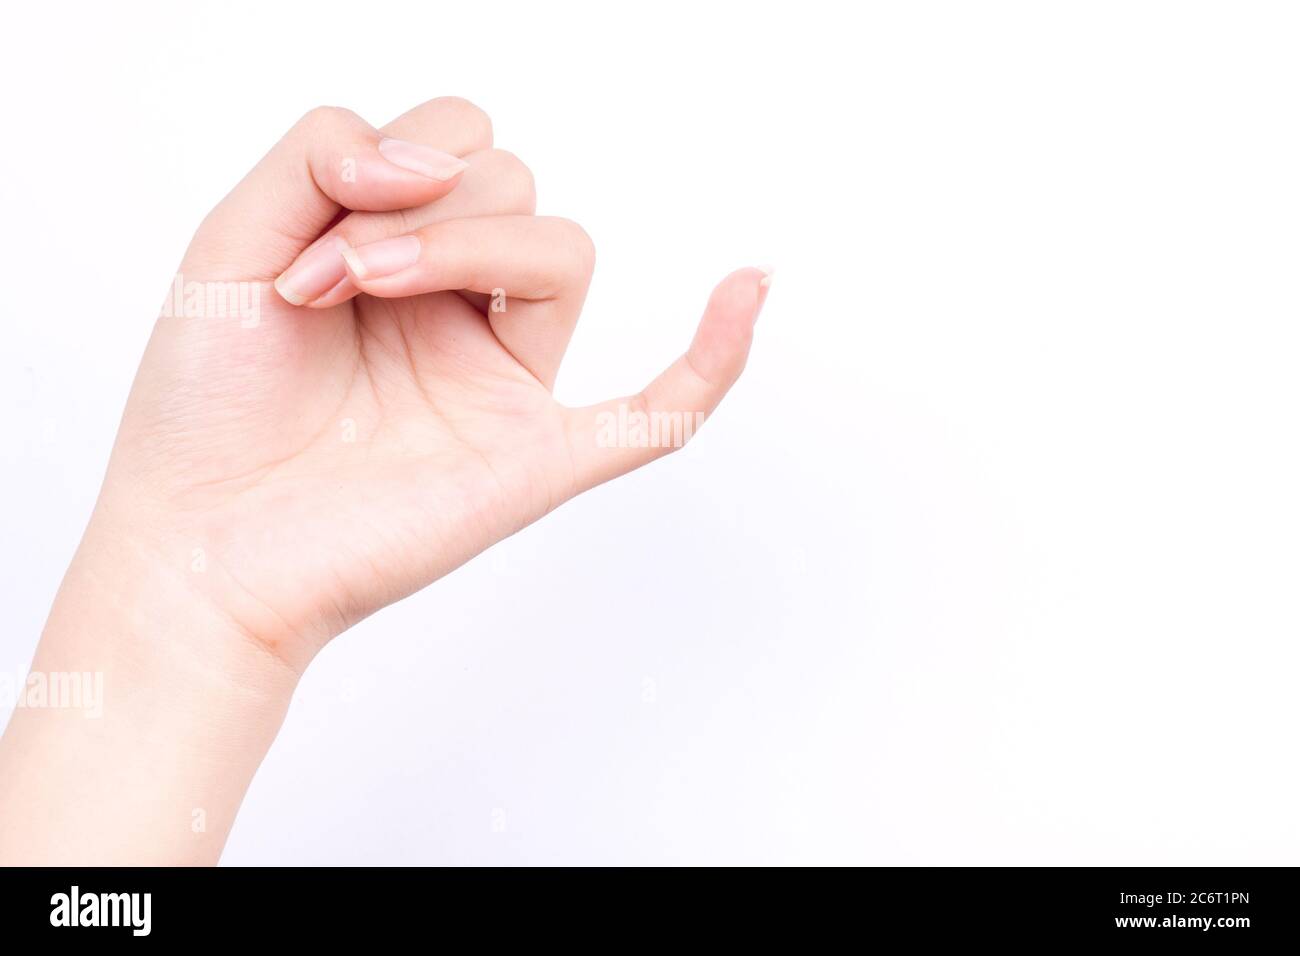 los símbolos de manos de dedos concepto aislado gancho el dedo pequeño de cada uno es medio para reconciliar o prometer o amistad sobre fondo blanco Foto de stock